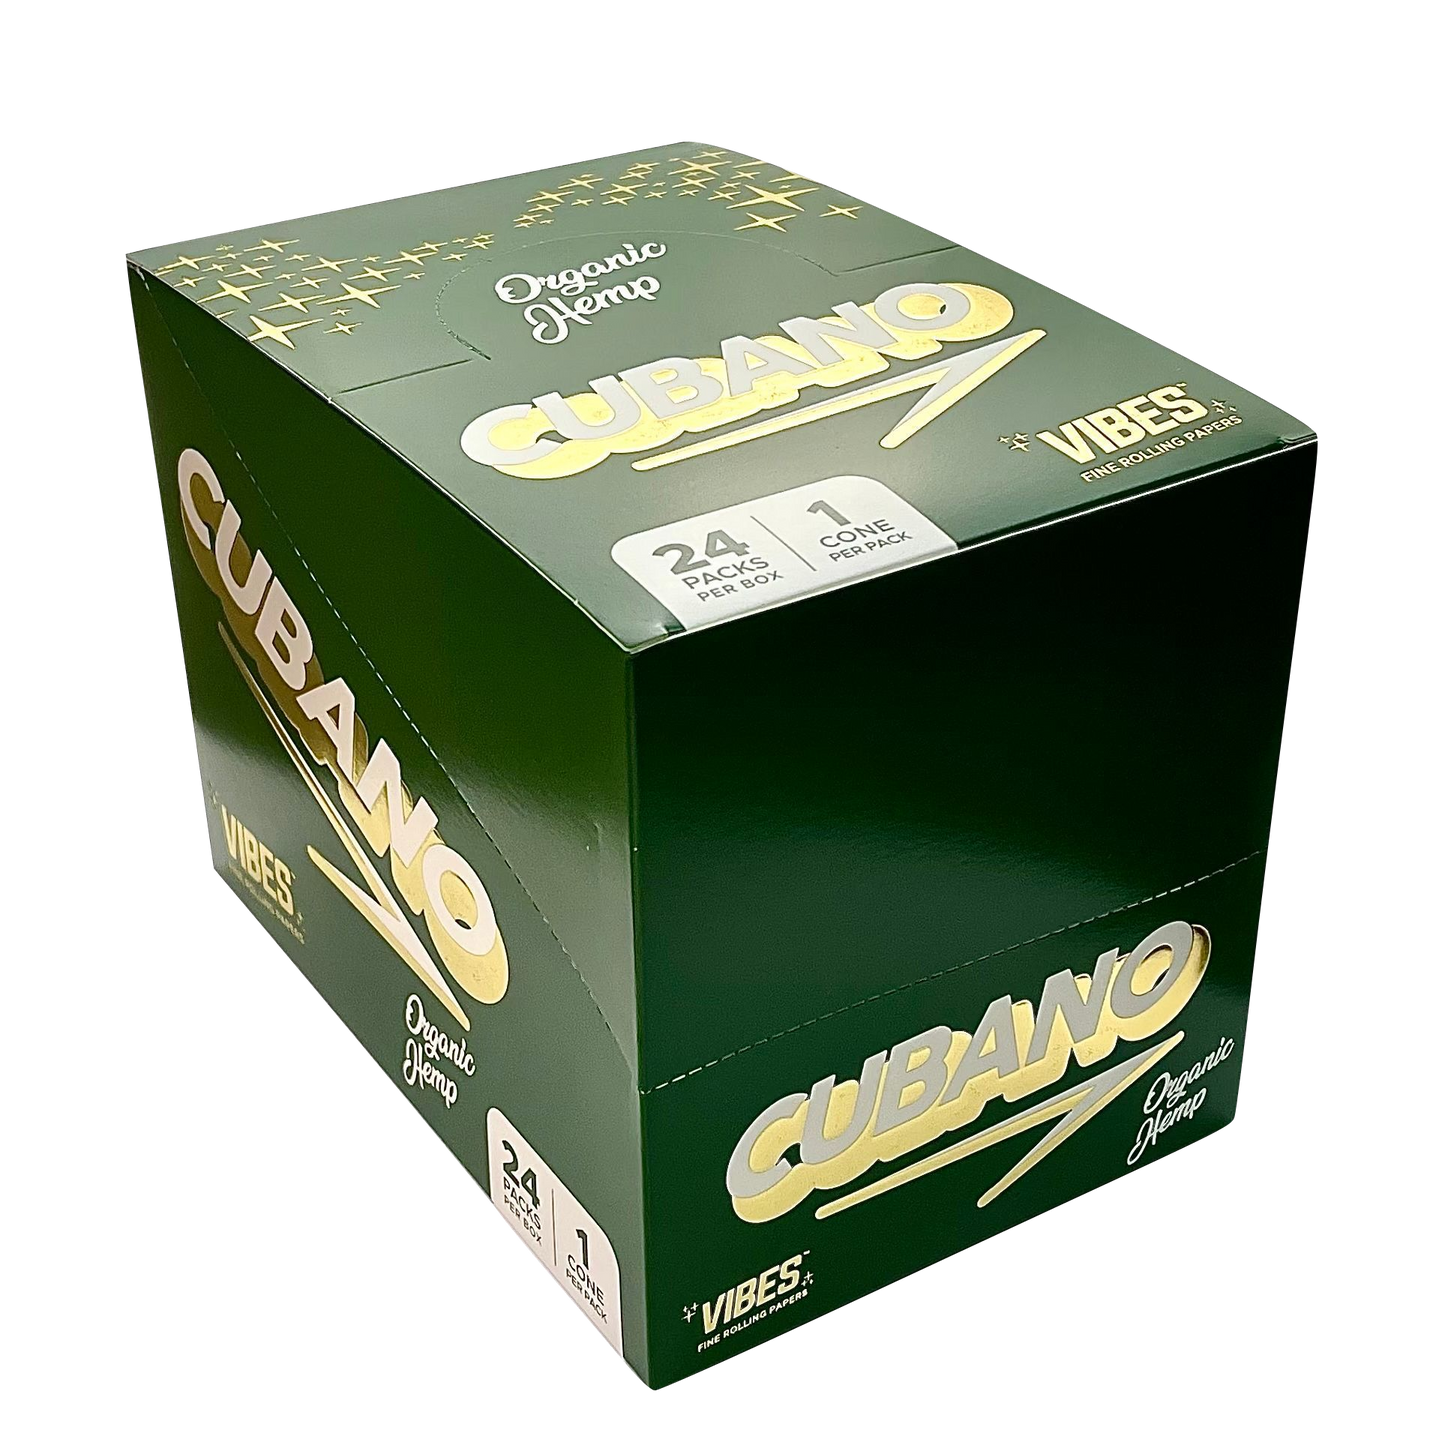 Vibes - Organic Hemp (Green Box)